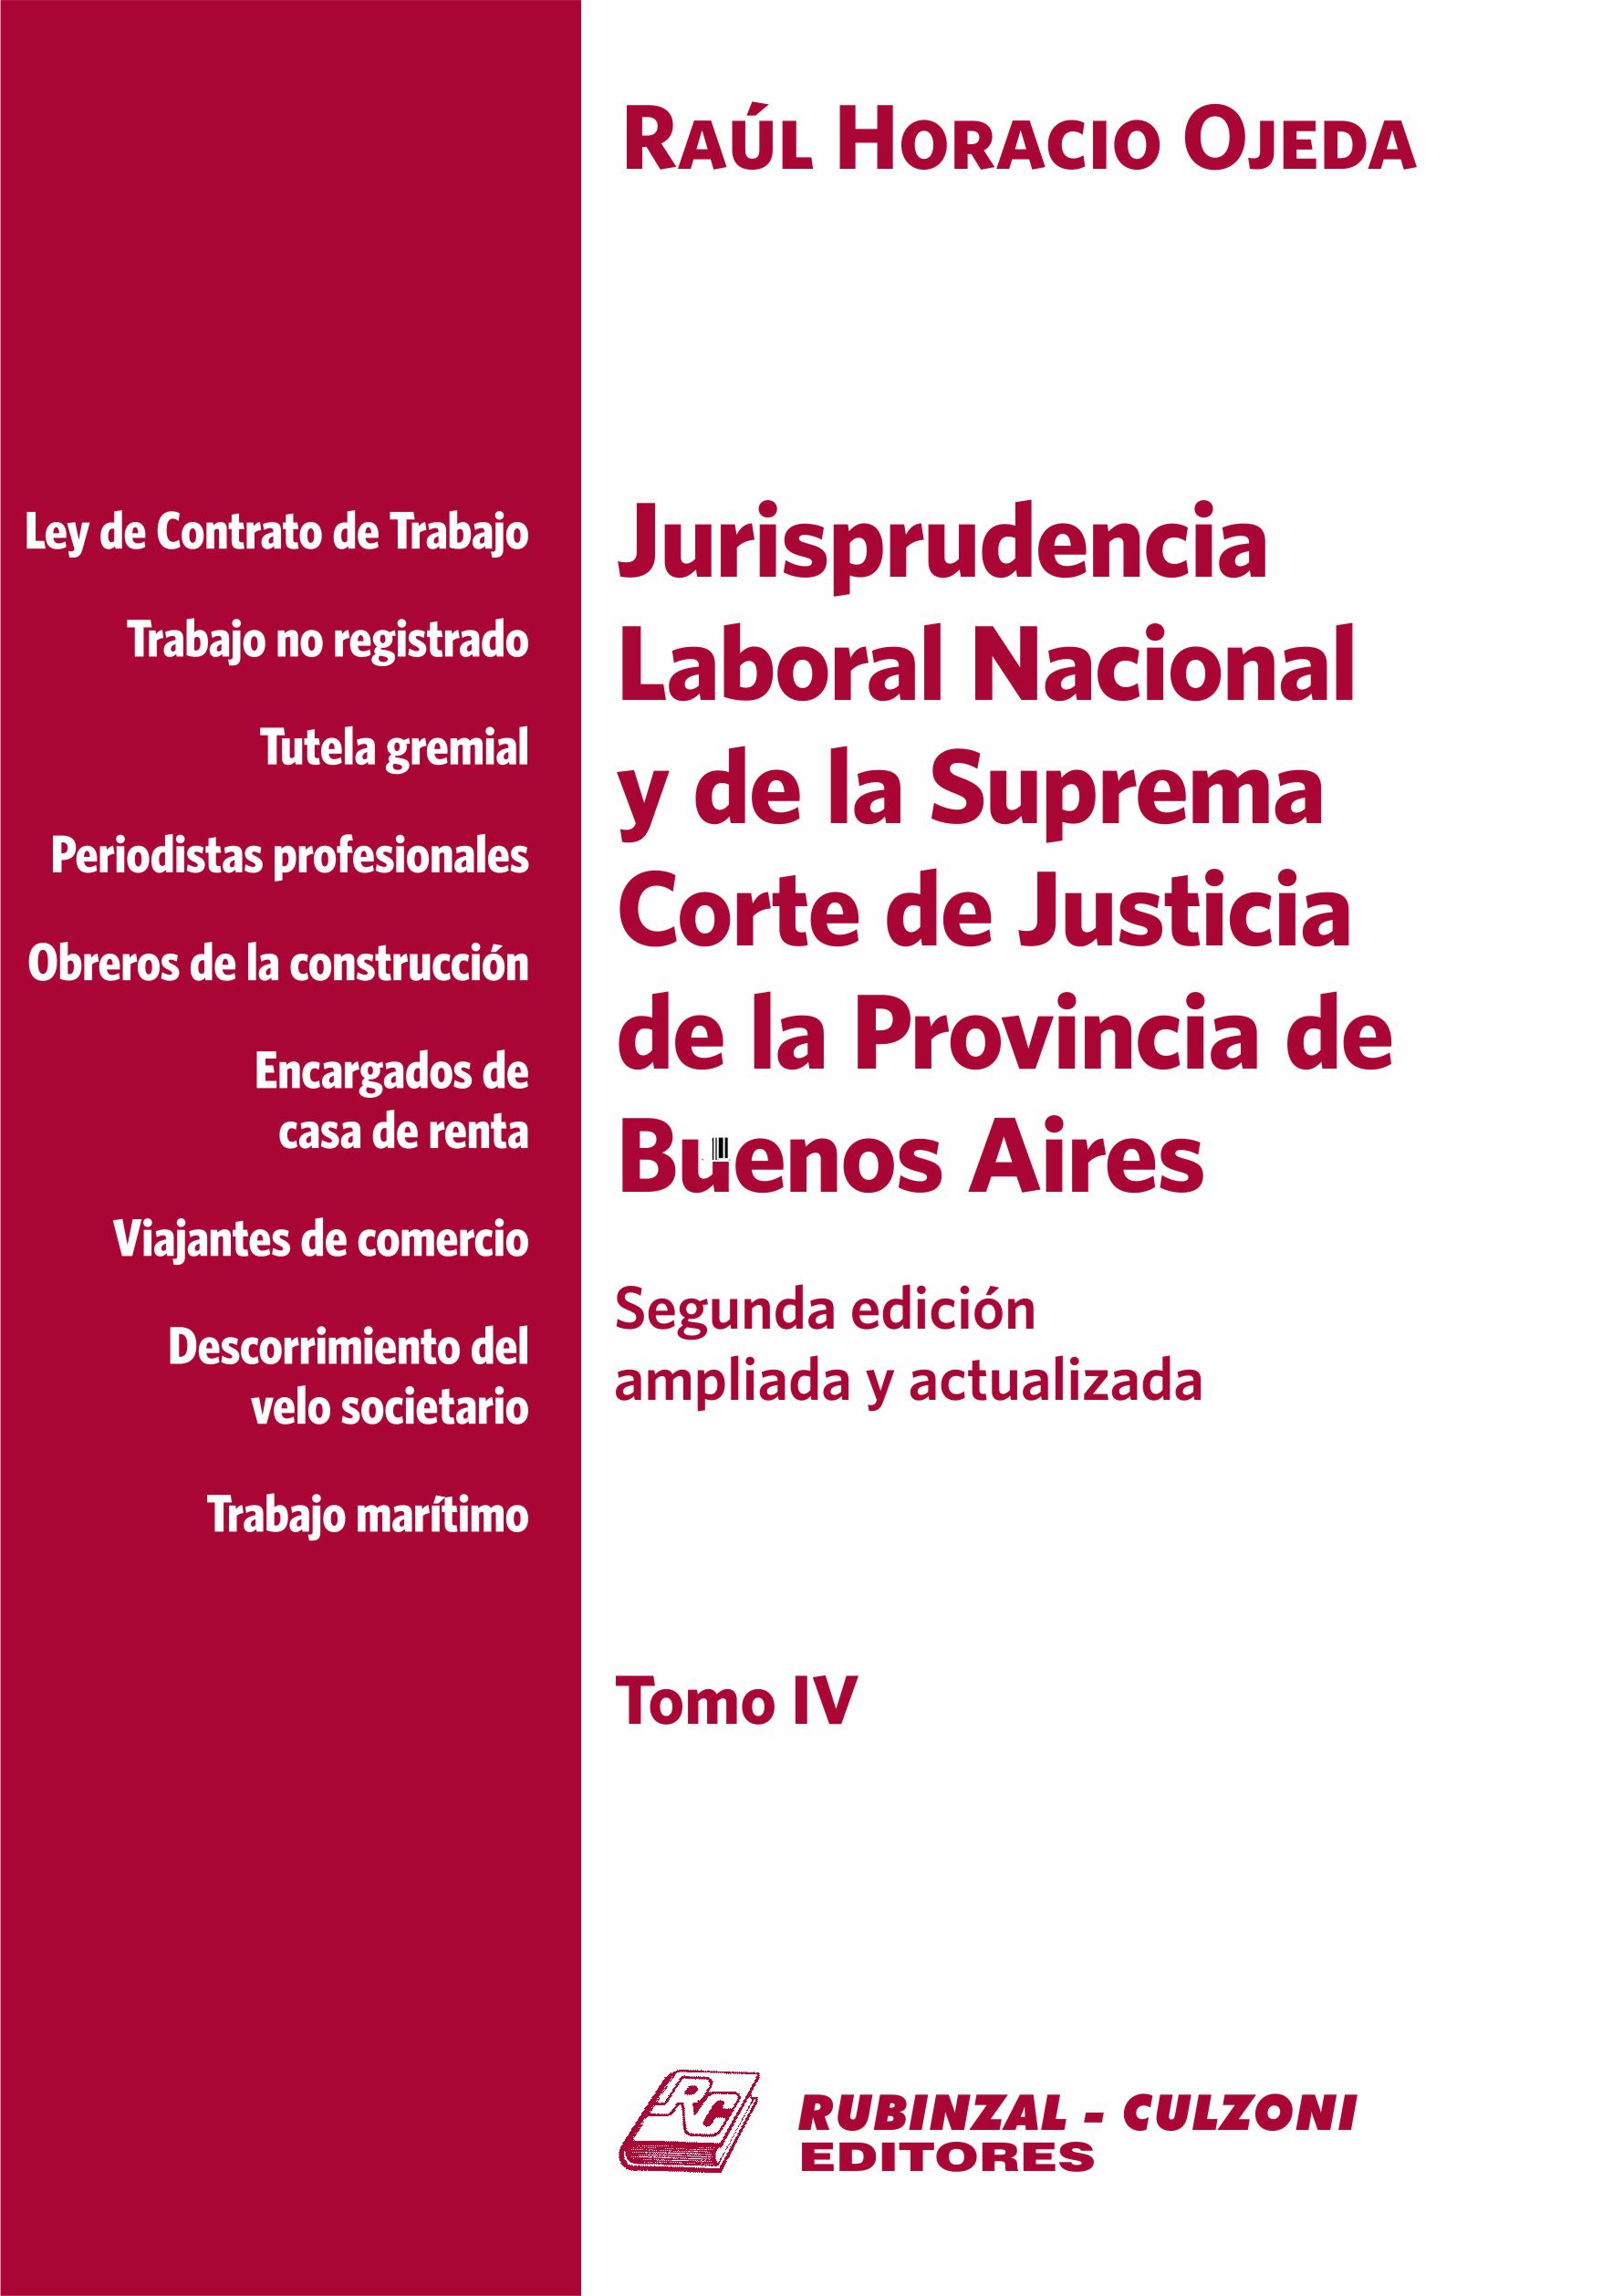 Jurisprudencia Laboral Nacional y de la Suprema Corte de Justicia de la Provincia de Buenos Aires - Tomo IV